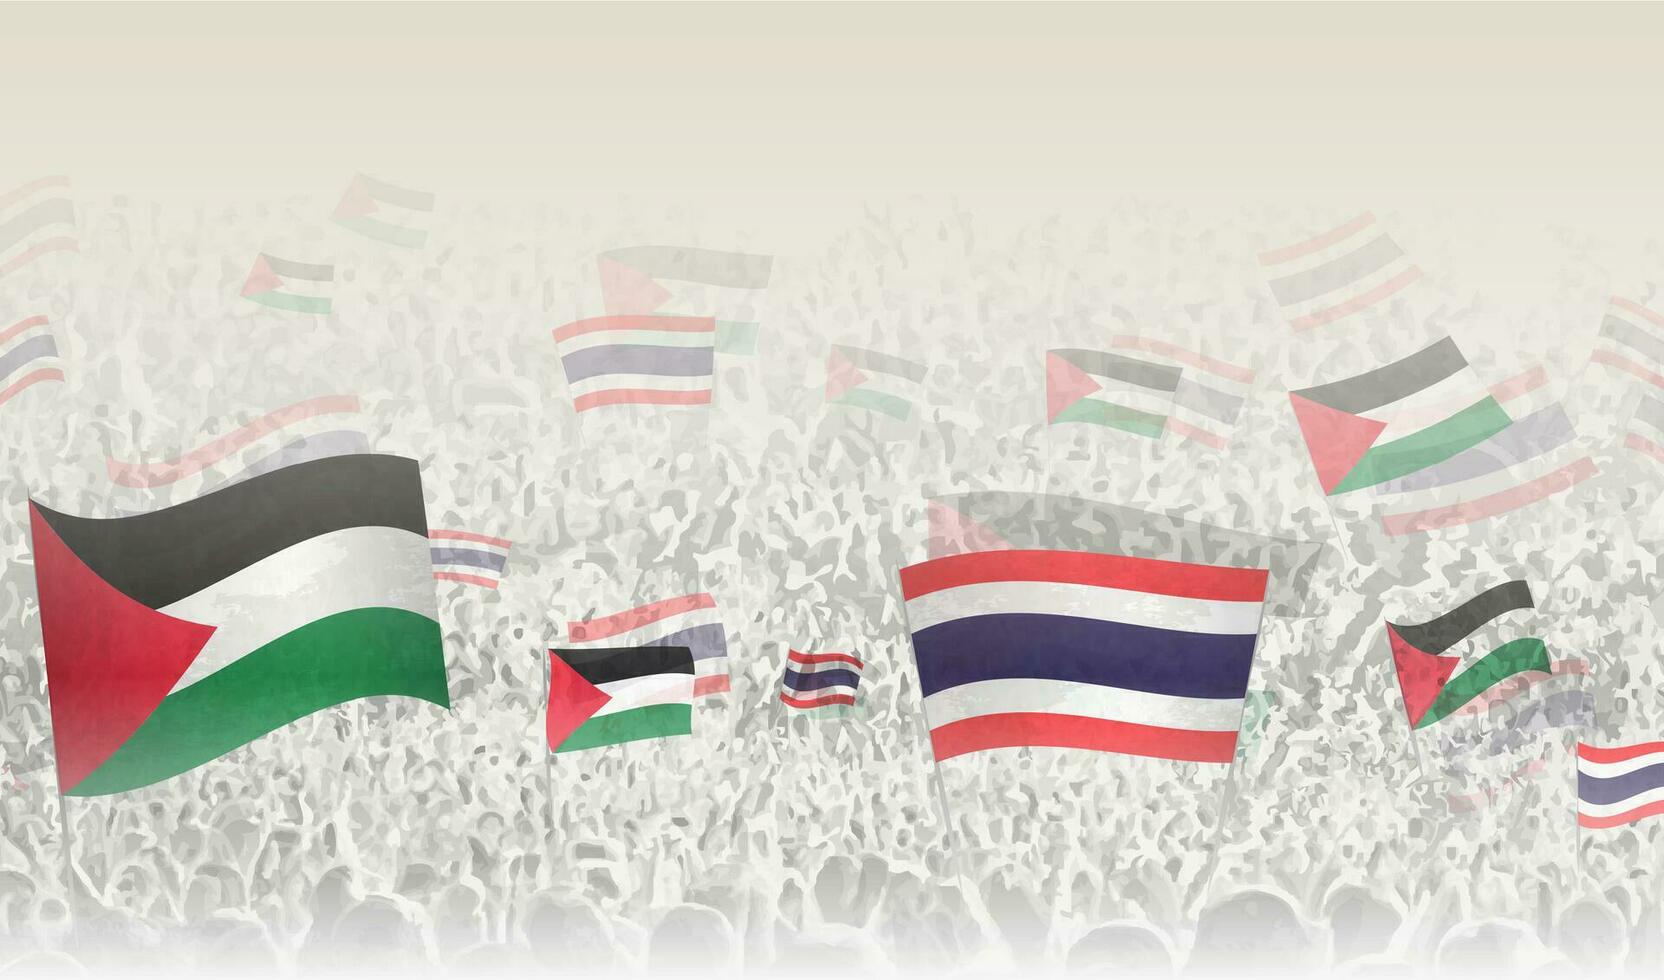 Palästina und Thailand Flaggen im ein Menge von Jubel Personen. vektor